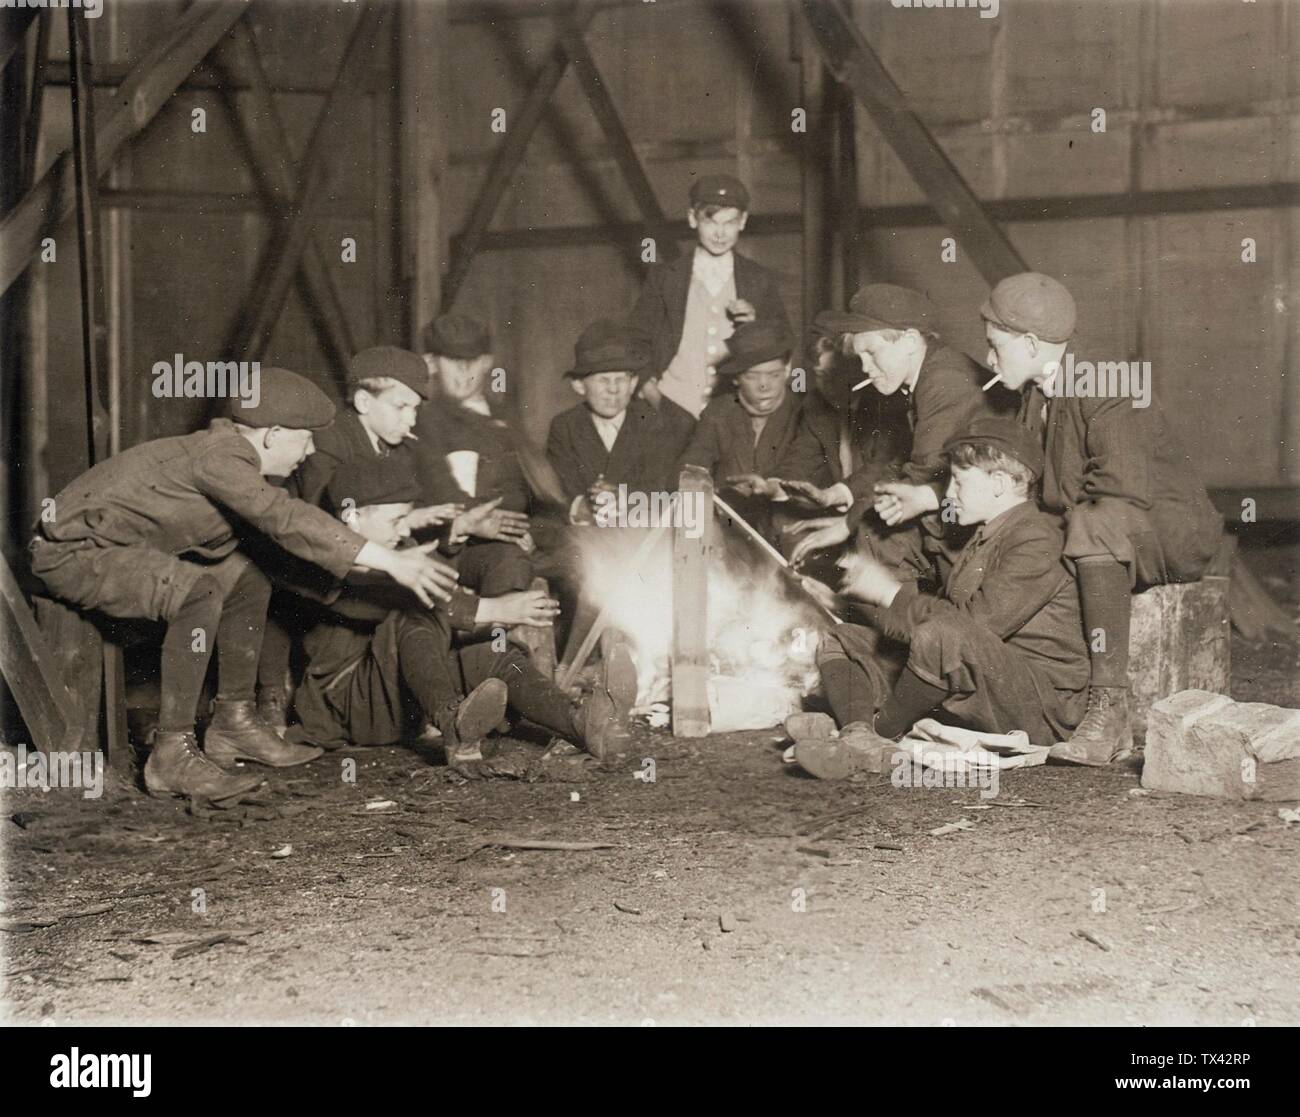 Gang of Newsboys um 22:00 Uhr; Vereinigte Staaten, 1910 Fotos Gelatine-silberfarbenes Druckgeschenk eines anonymen Spenders, Los Angeles (M.2000.174.16) Fotografien; 1910DATE QS:P571,+1910-00-00T00:00:00Z/9; Stockfoto